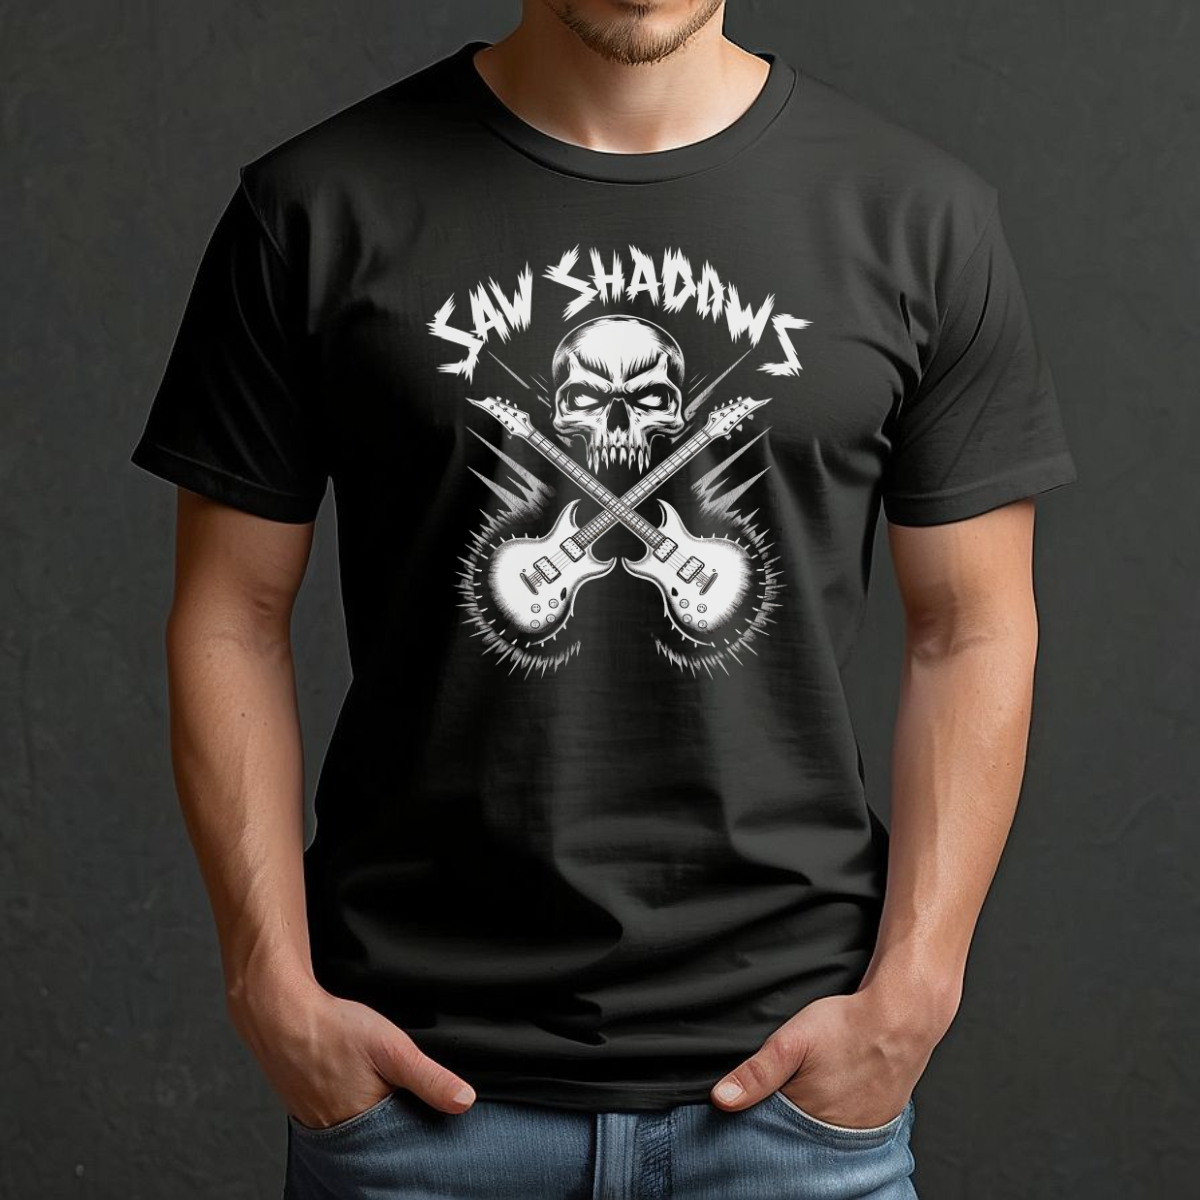 Saw Shadows Guitar and Skull Shirt